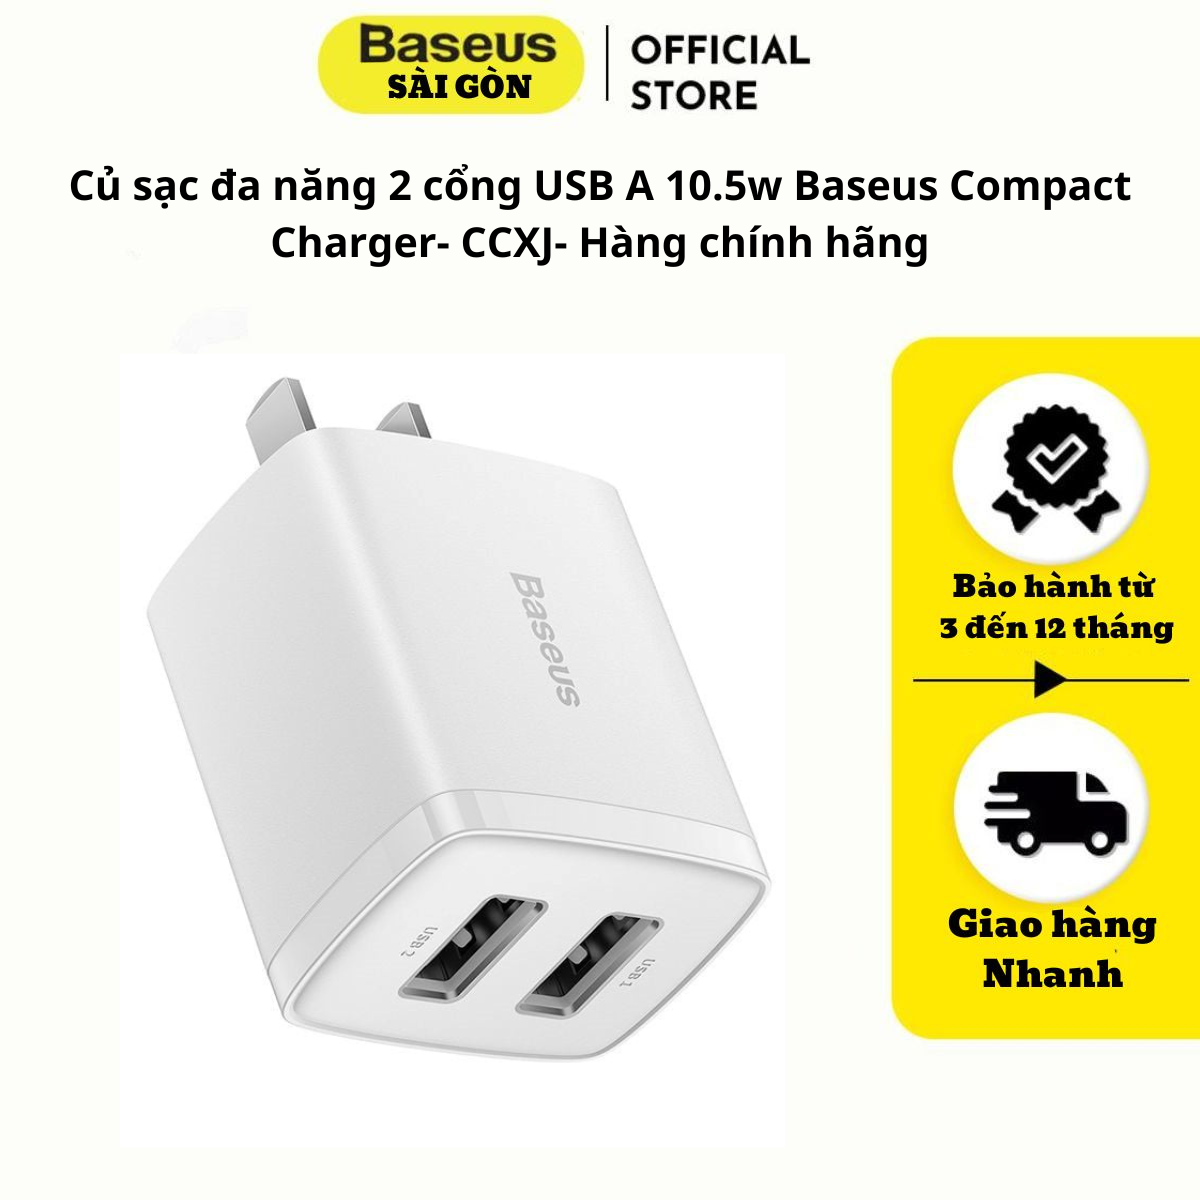 Củ sạc đa năng 2 cổng USB A 10.5w Baseus Compact Charger- CCXJ- Hàng chính hãng